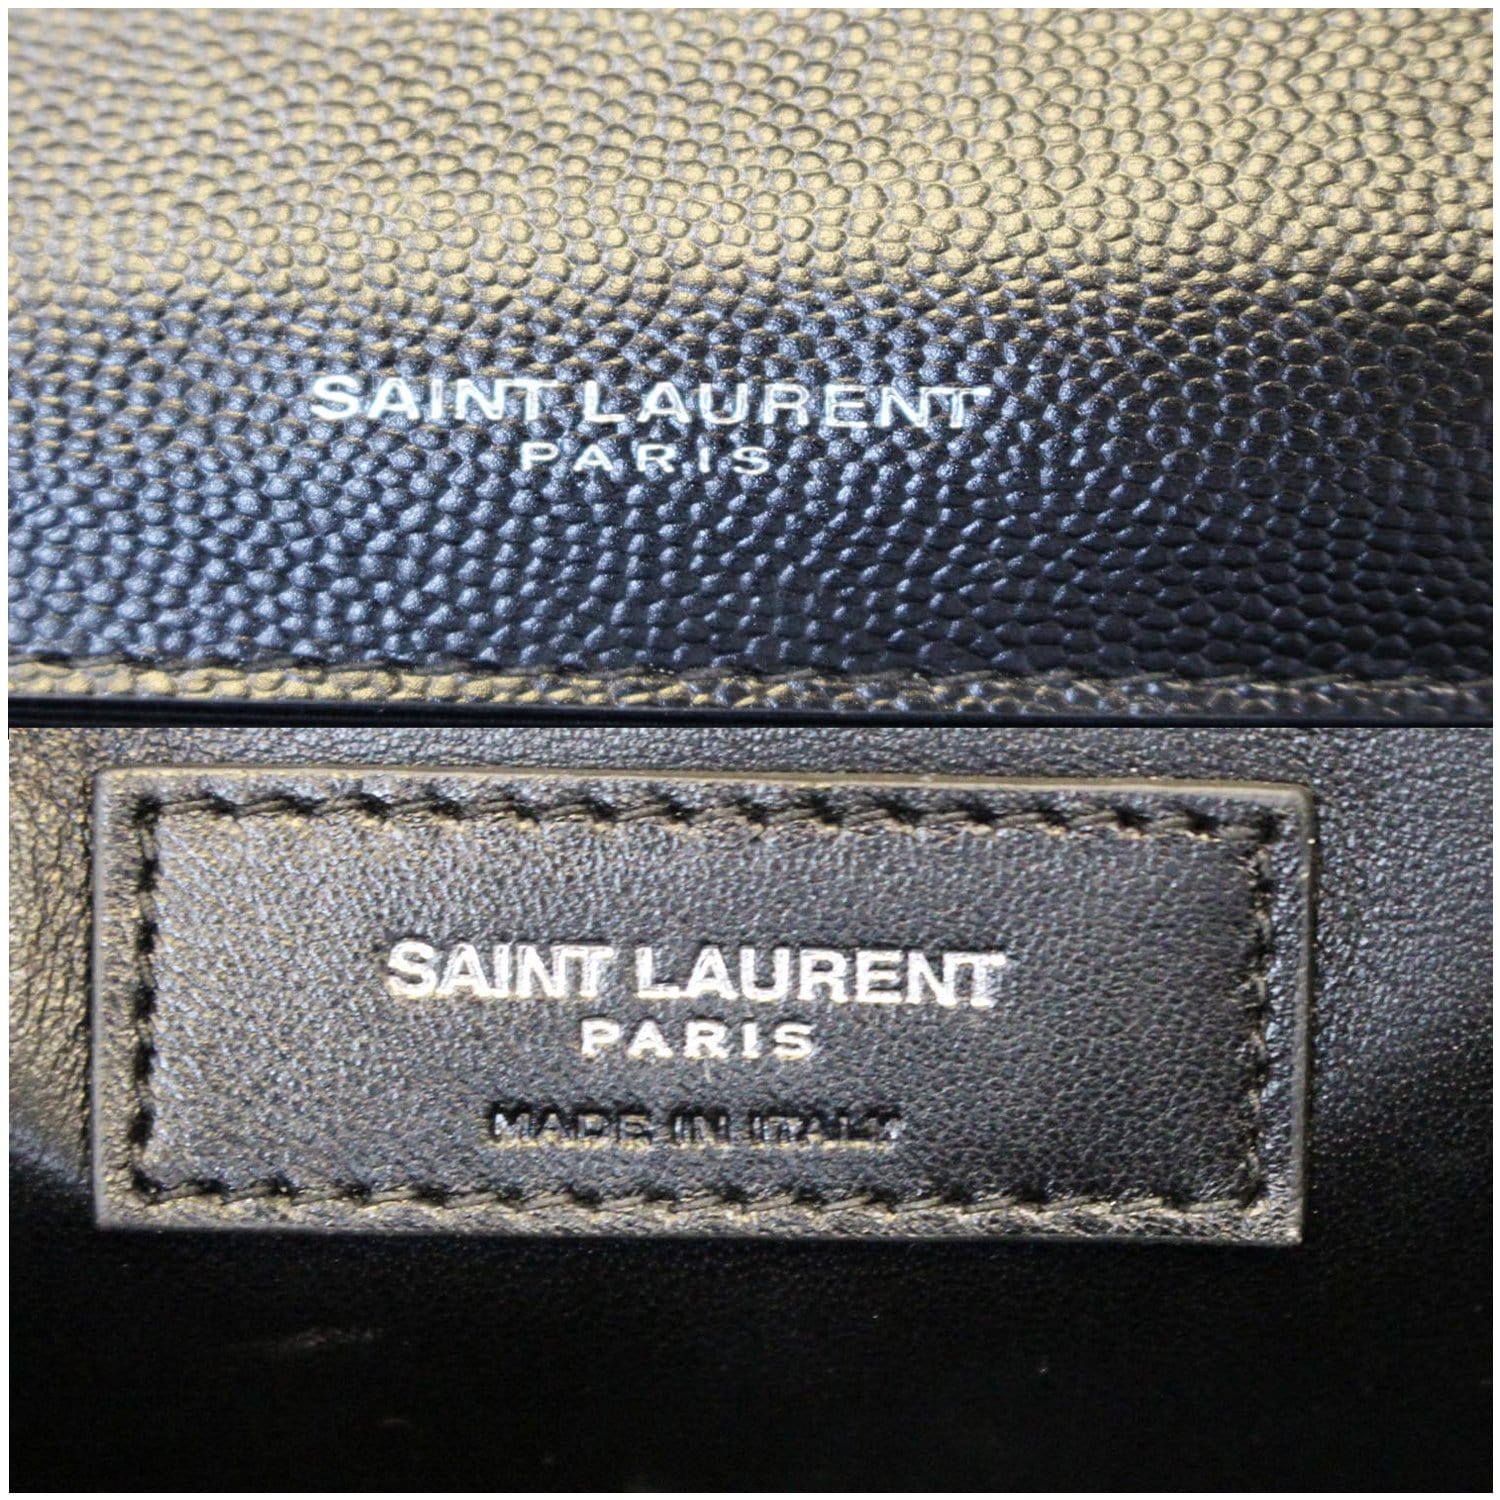 YVES SAINT LAURENT Kate Large Grain De Poudre Leather Shoulder Bag Bla